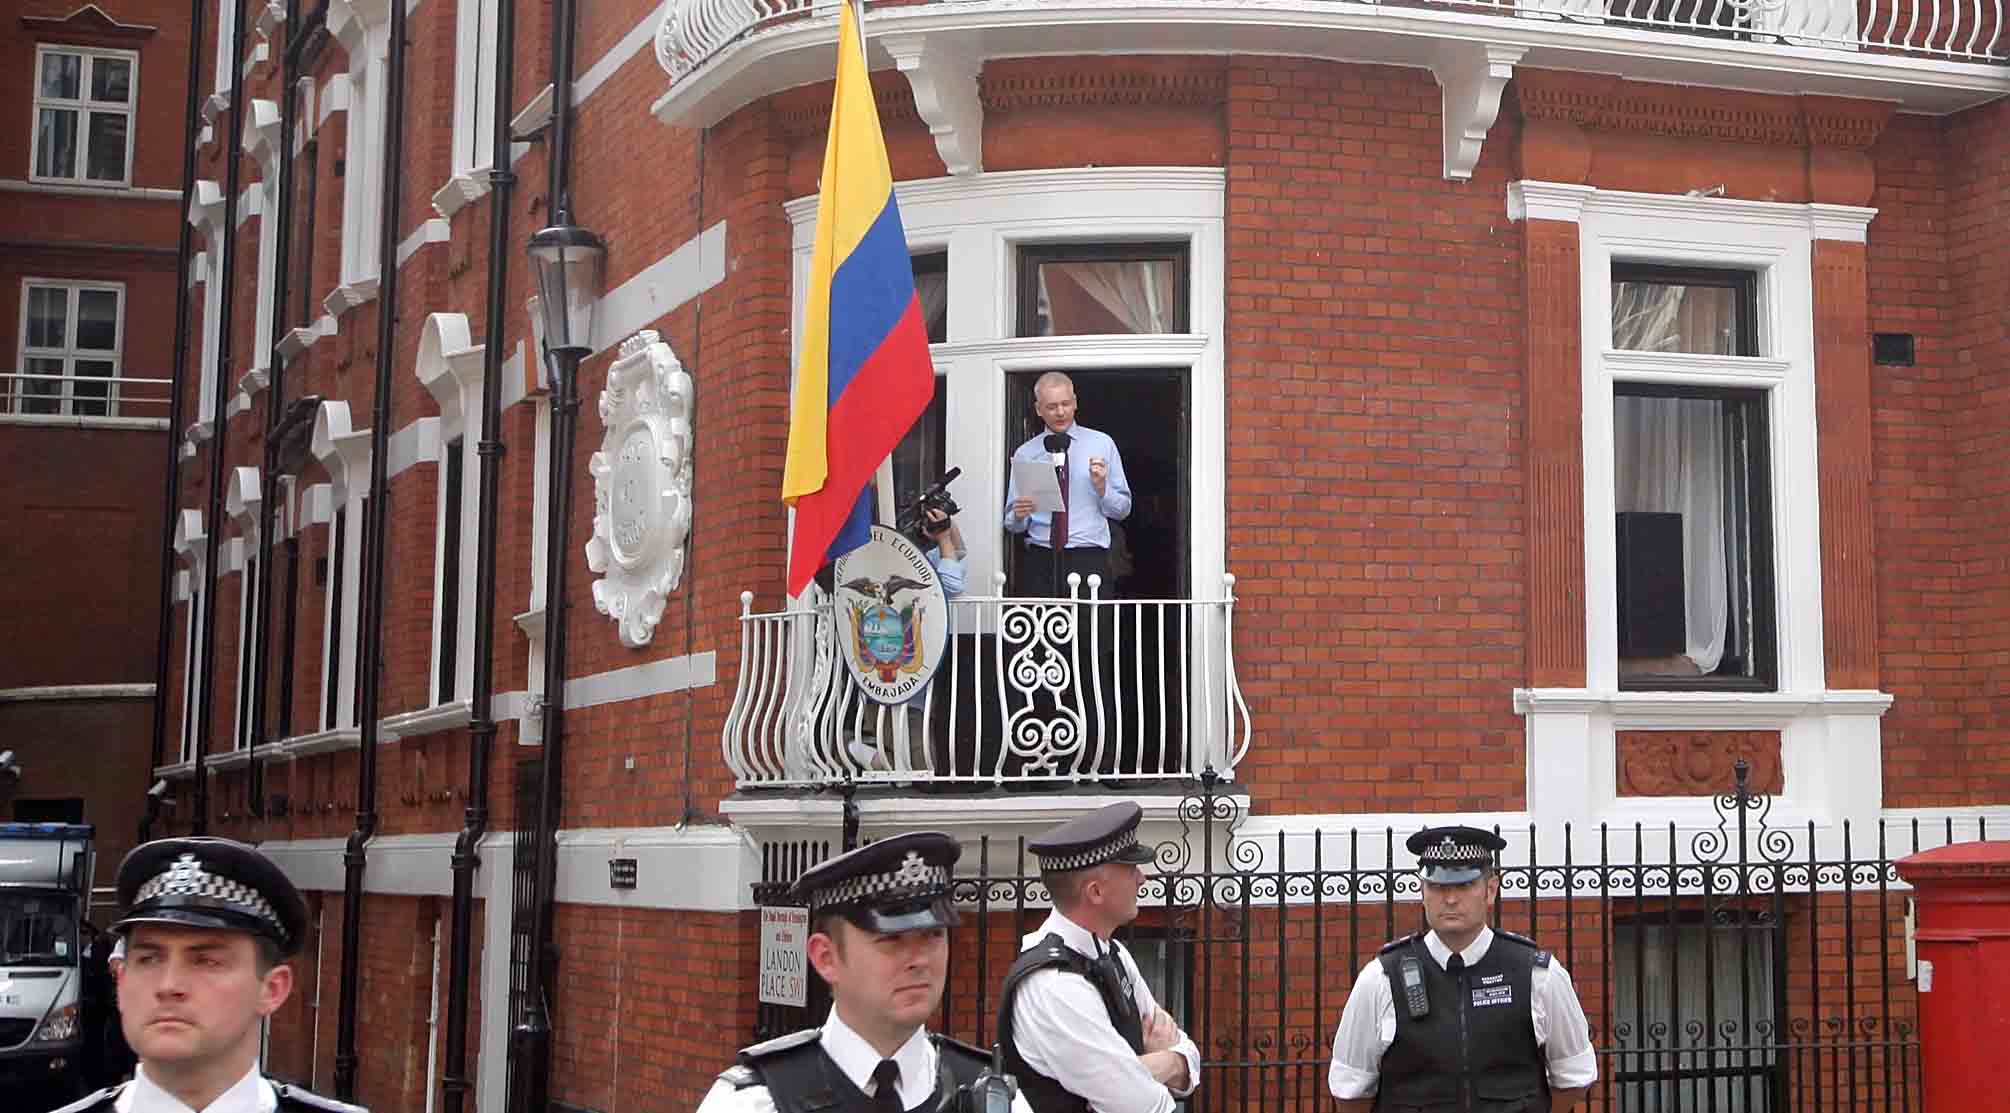 El cofundador de WikiLeaks acusado desde 2010 por violación en Suecia, se encuentra refugiado en la embajada ecuatoriana en Londres